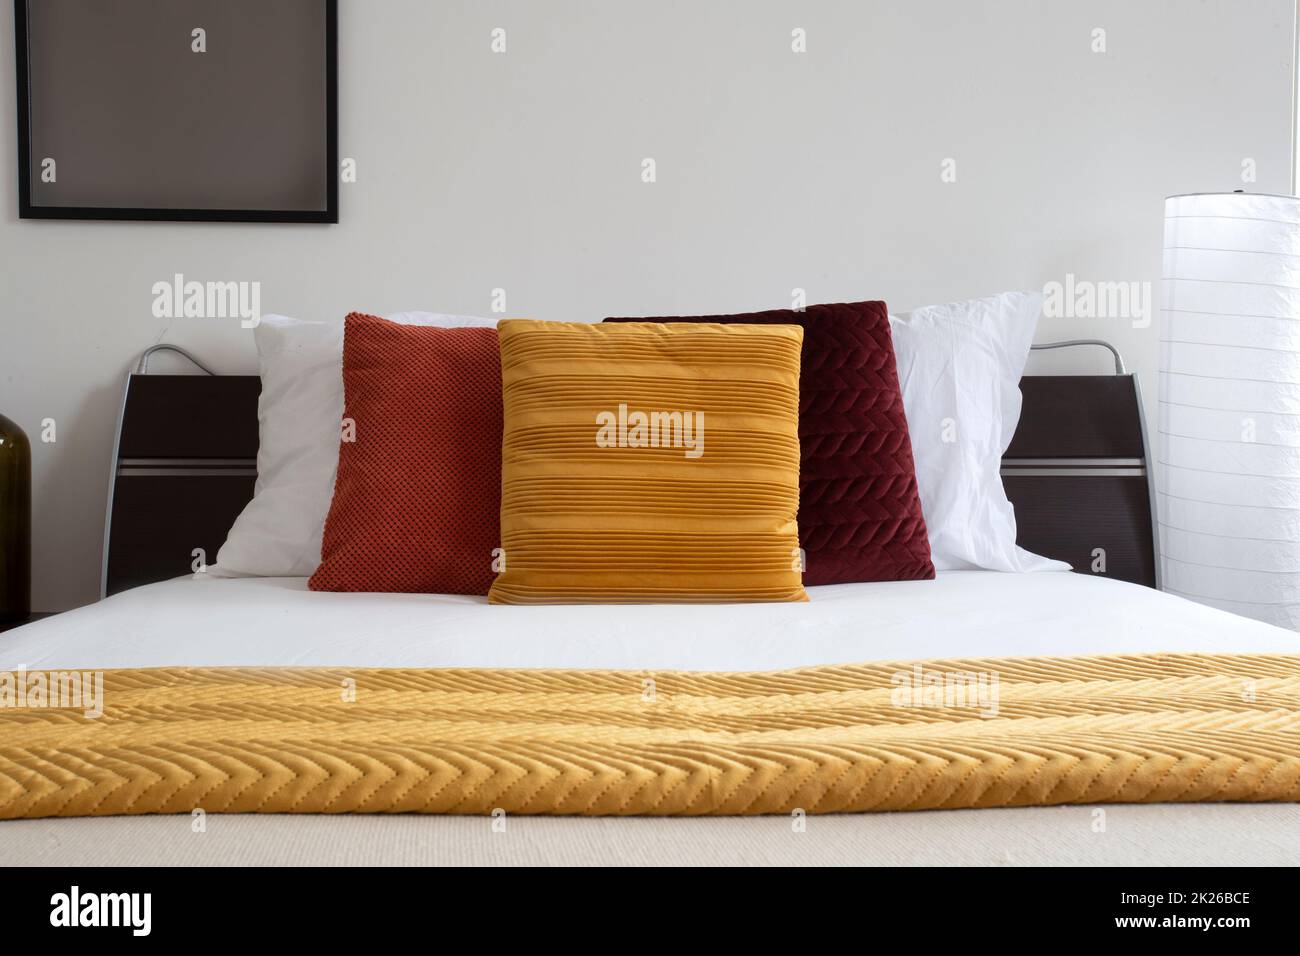 Das Bett war gemacht. Modernes und ordentliches Bett in der Nacht. Elegantes Doppelbett. Nahaufnahme eines Schlafzimmers in einem Hotelzimmer. Bett mit weißen Laken und Kissen. Stockfoto